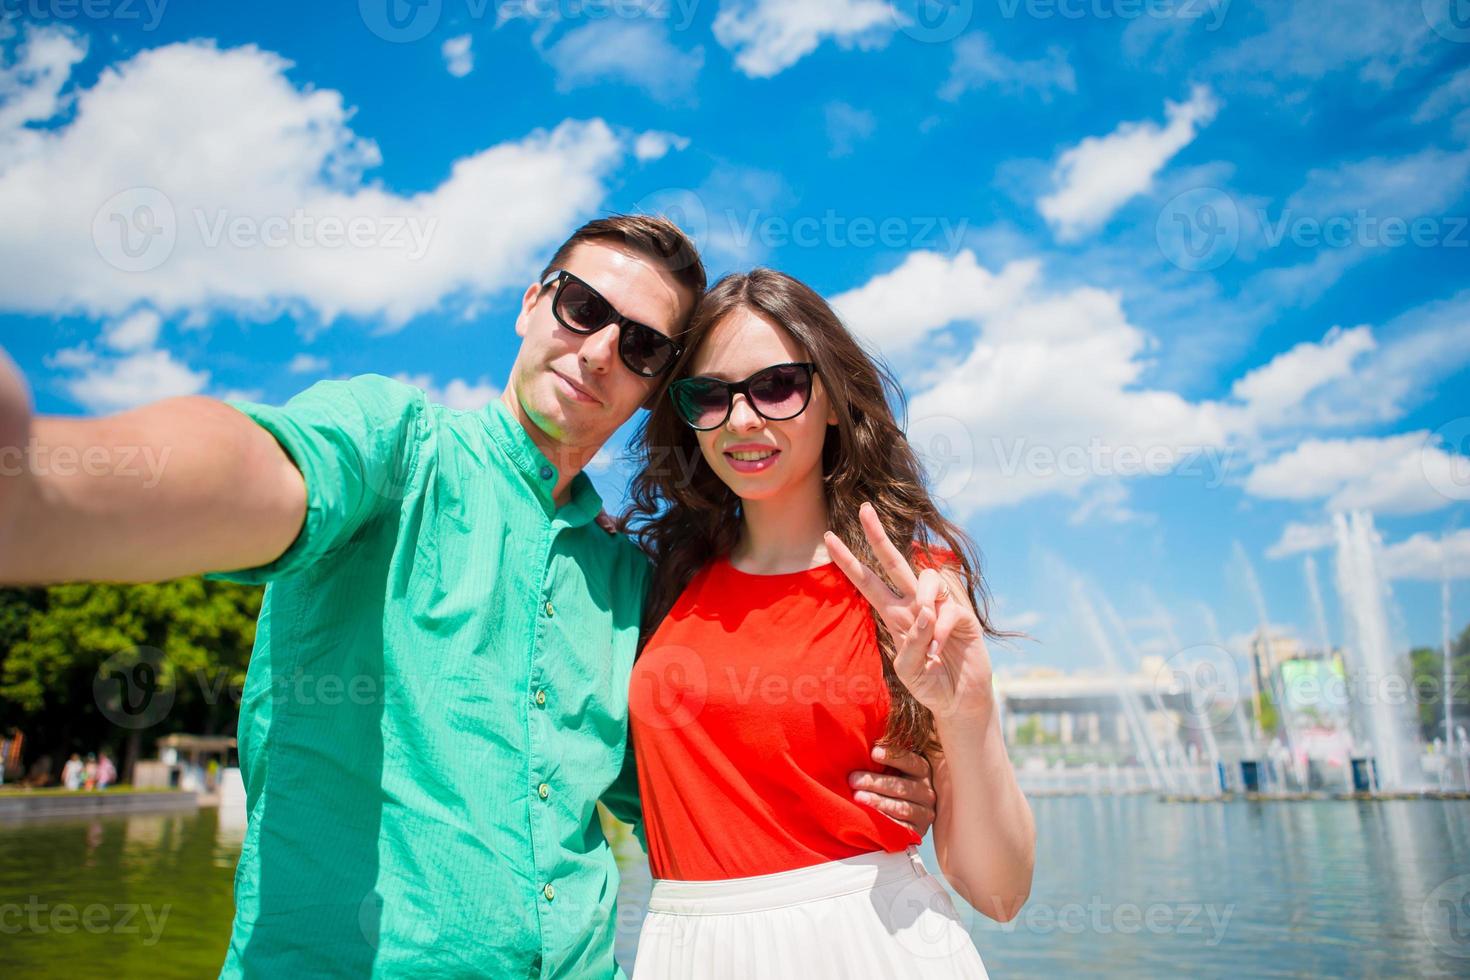 jeunes amis touristes voyageant en vacances en europe souriant heureux. caucasien, girl, et, homme, confection, selfie, fond, de, fontaine photo